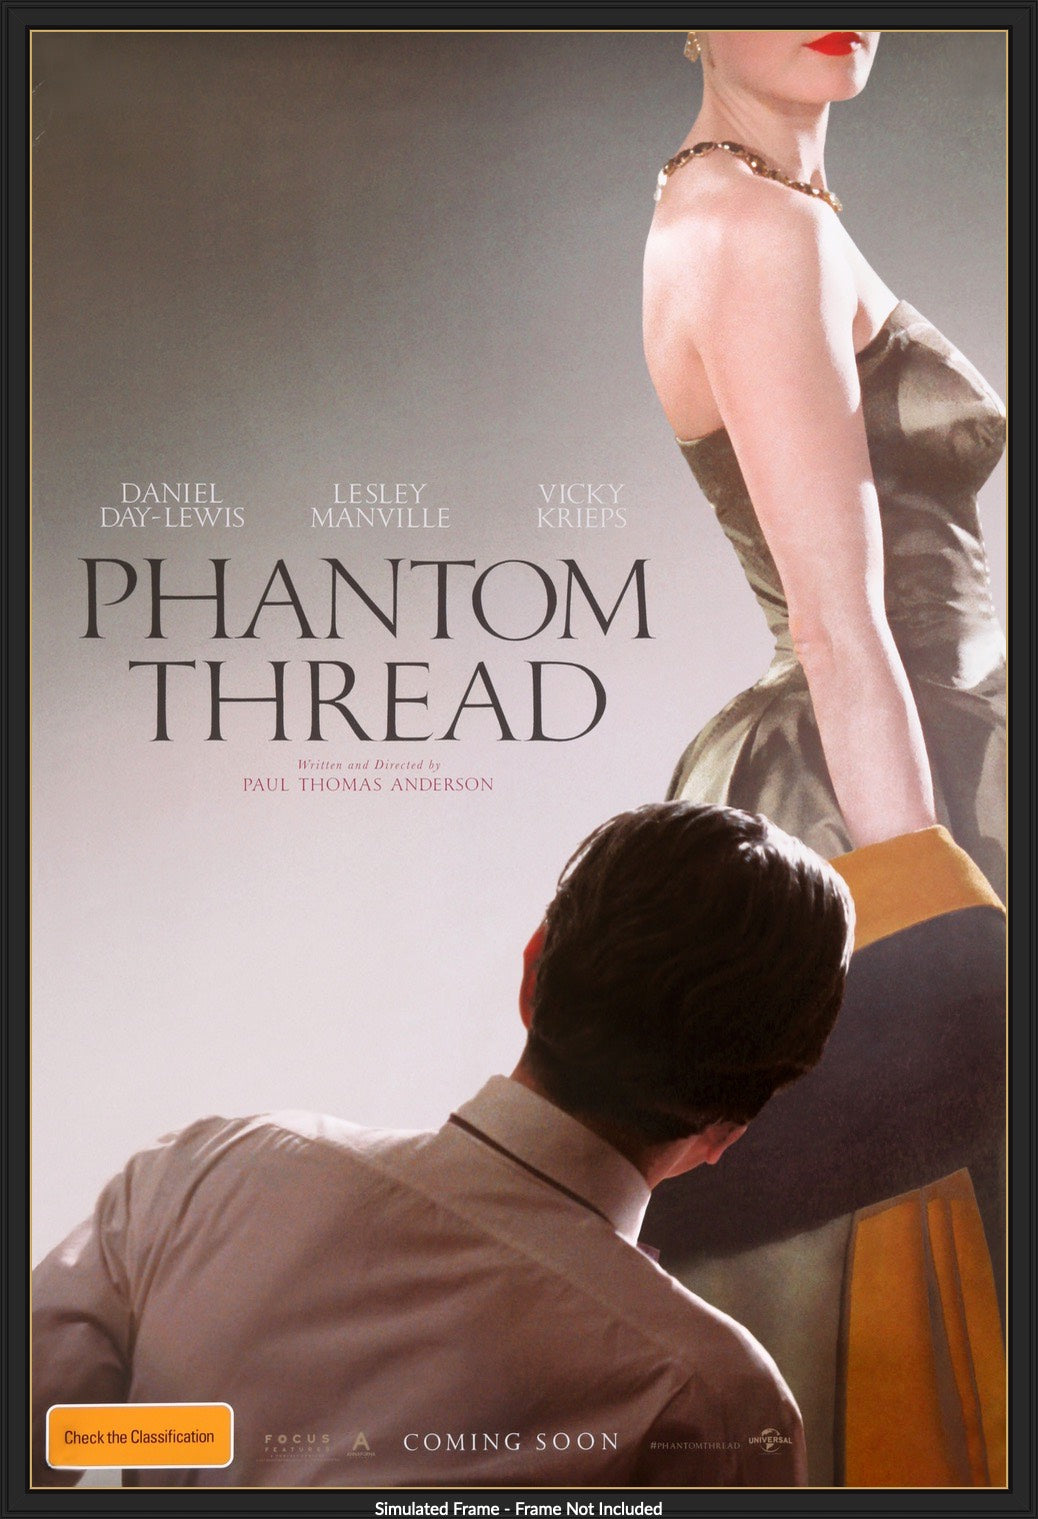 Phantom Thread (2017) original movie poster for sale at Original Film Art